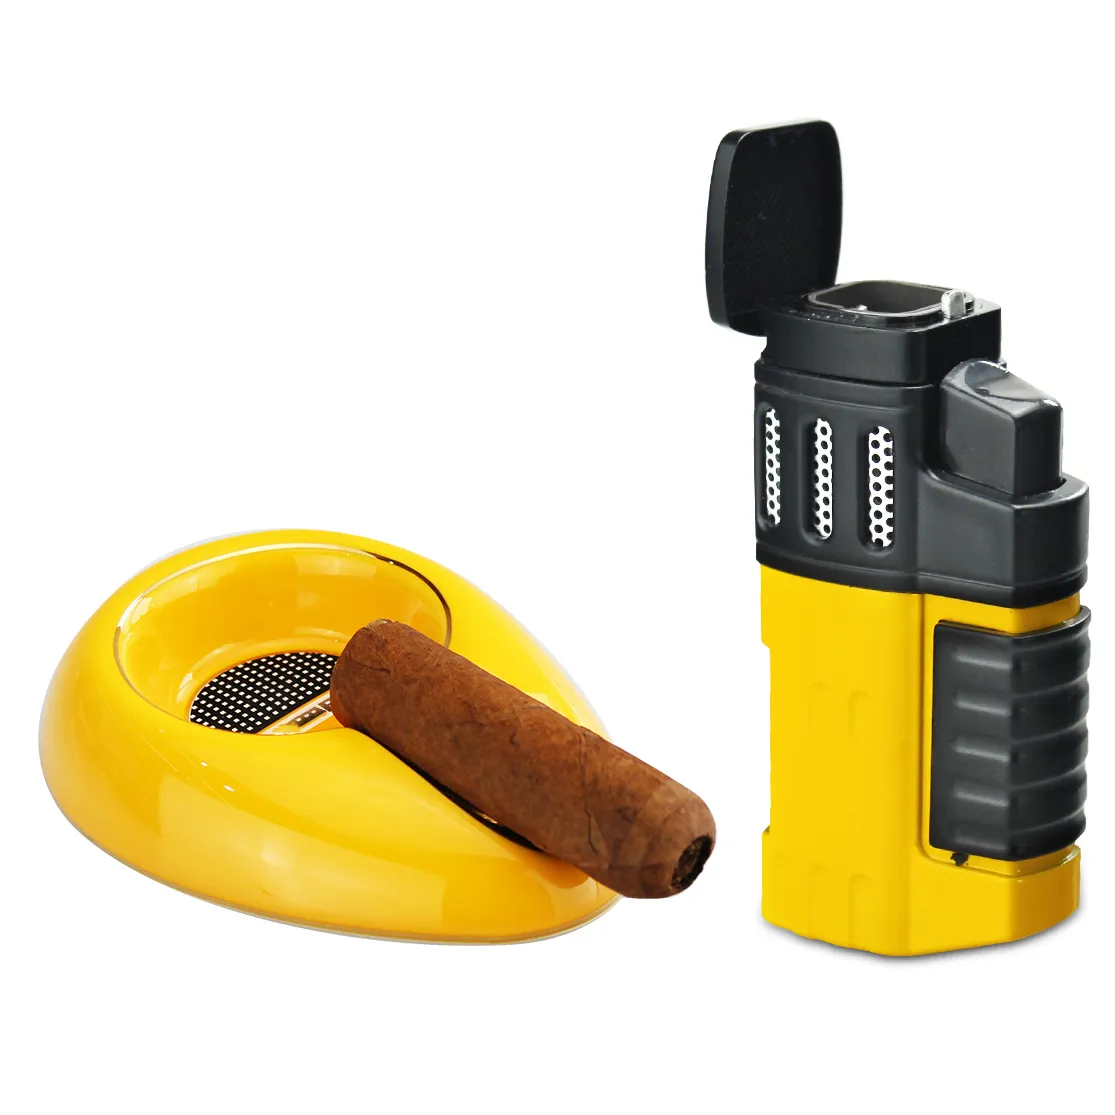 Zigarren zubehör Set Werkzeug Zigarre 4 Jet Flame Butan gas Zigarette mit Punch Torch Feuerzeug Aschenbecher Set